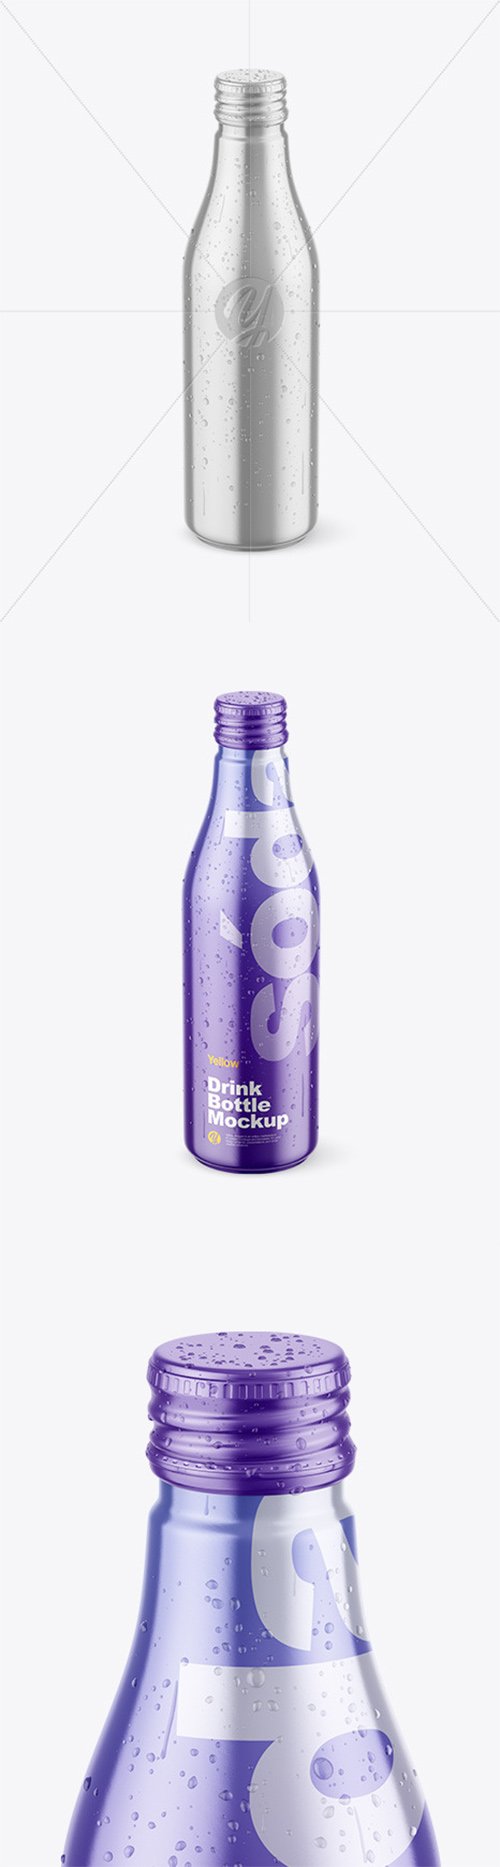 Metallic Drink Bottle w/ Drops Mockup 78314